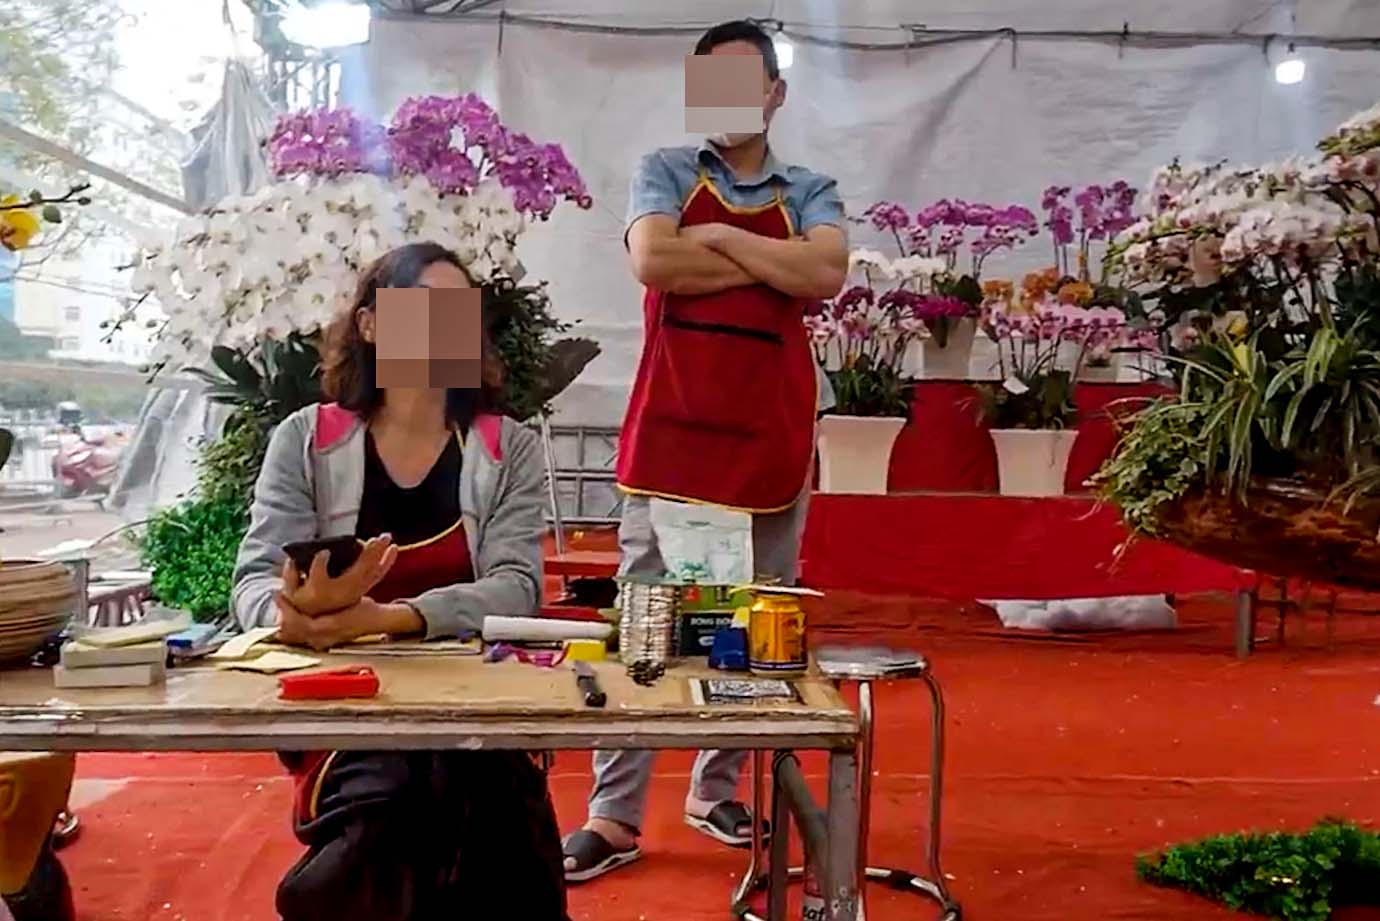 Nhiều tiểu thương kinh doanh trong chợ hoa xuân tại ô đất E5 Dương Đình Nghệ cho biết phải chi hàng chục triệu đồng để có mặt bằng bán hàng Tết. Ảnh: Nhóm PV.